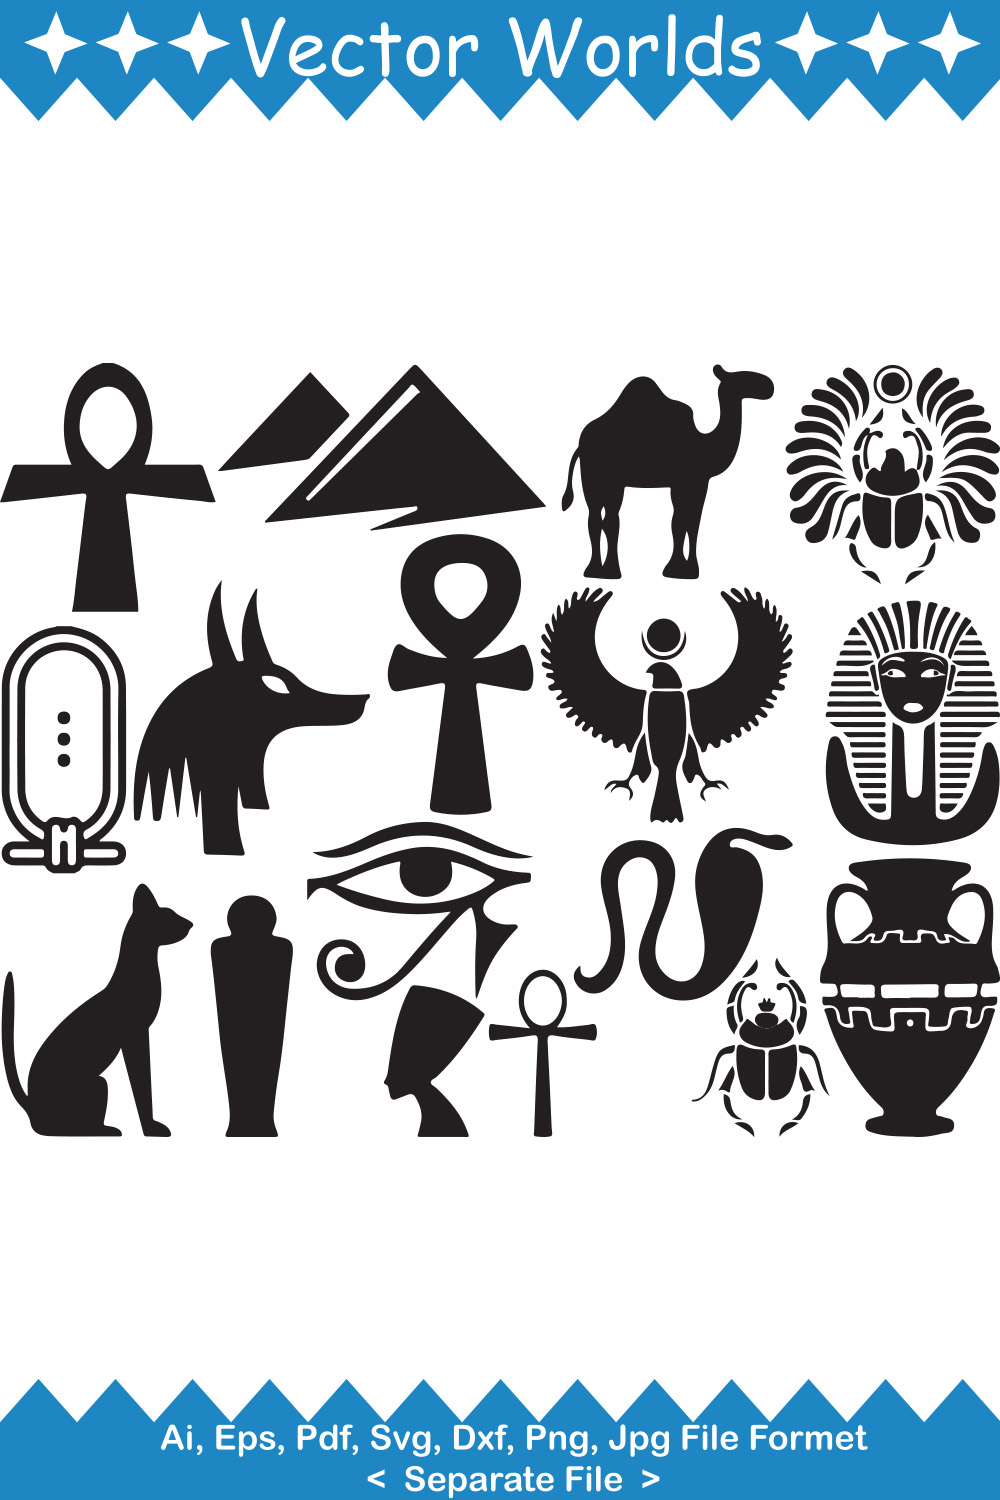 Egyptian SVG Vector Design pinterest image.